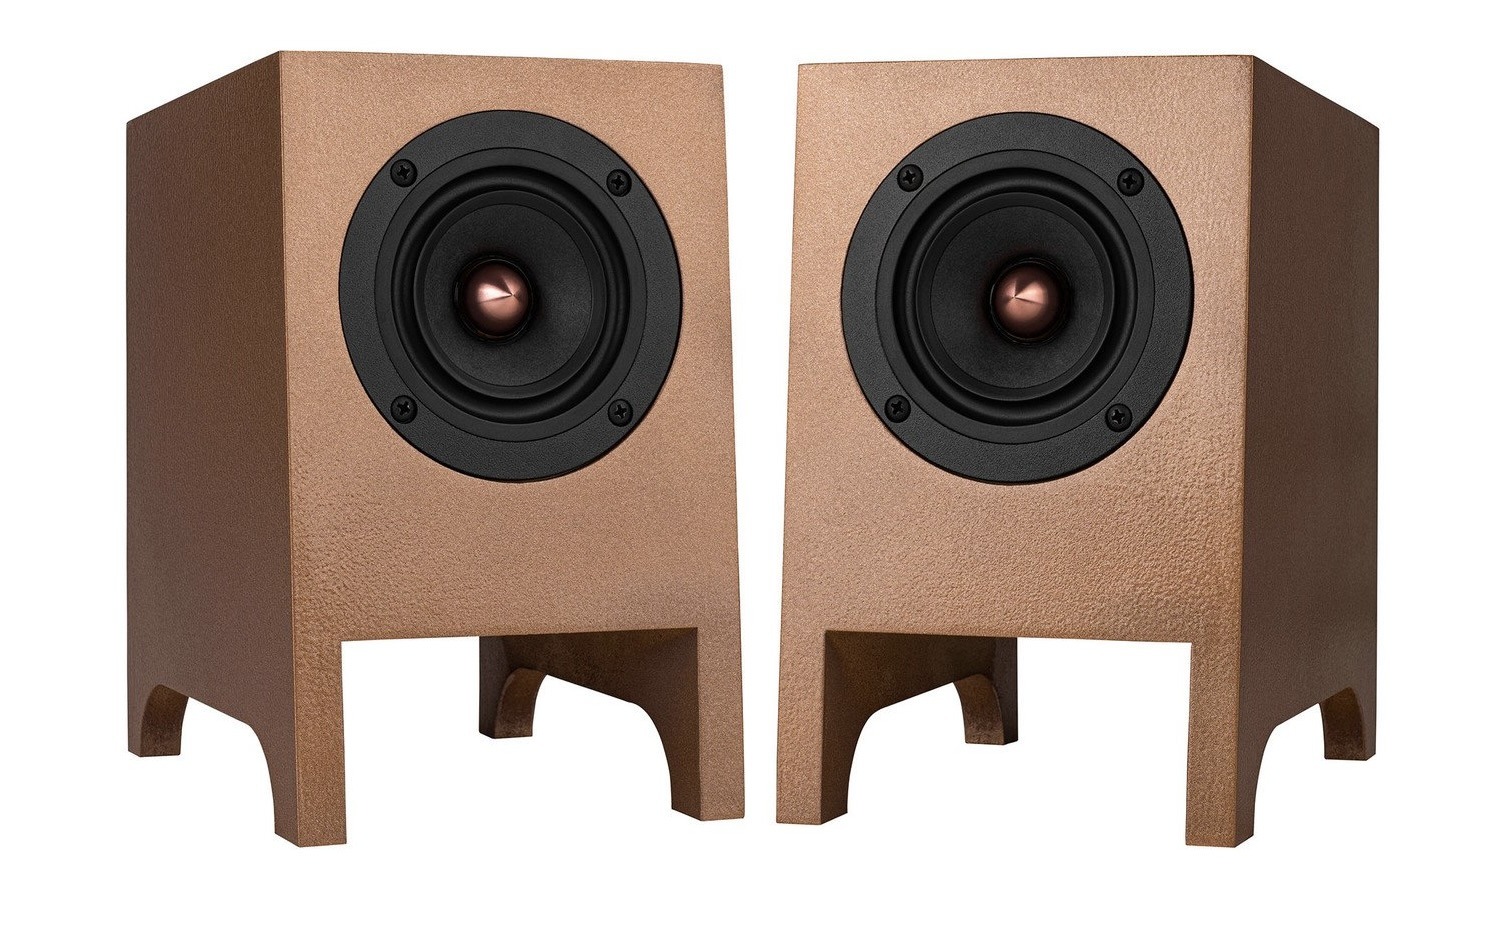 copperhead-diy-speaker-kit 2.jpg